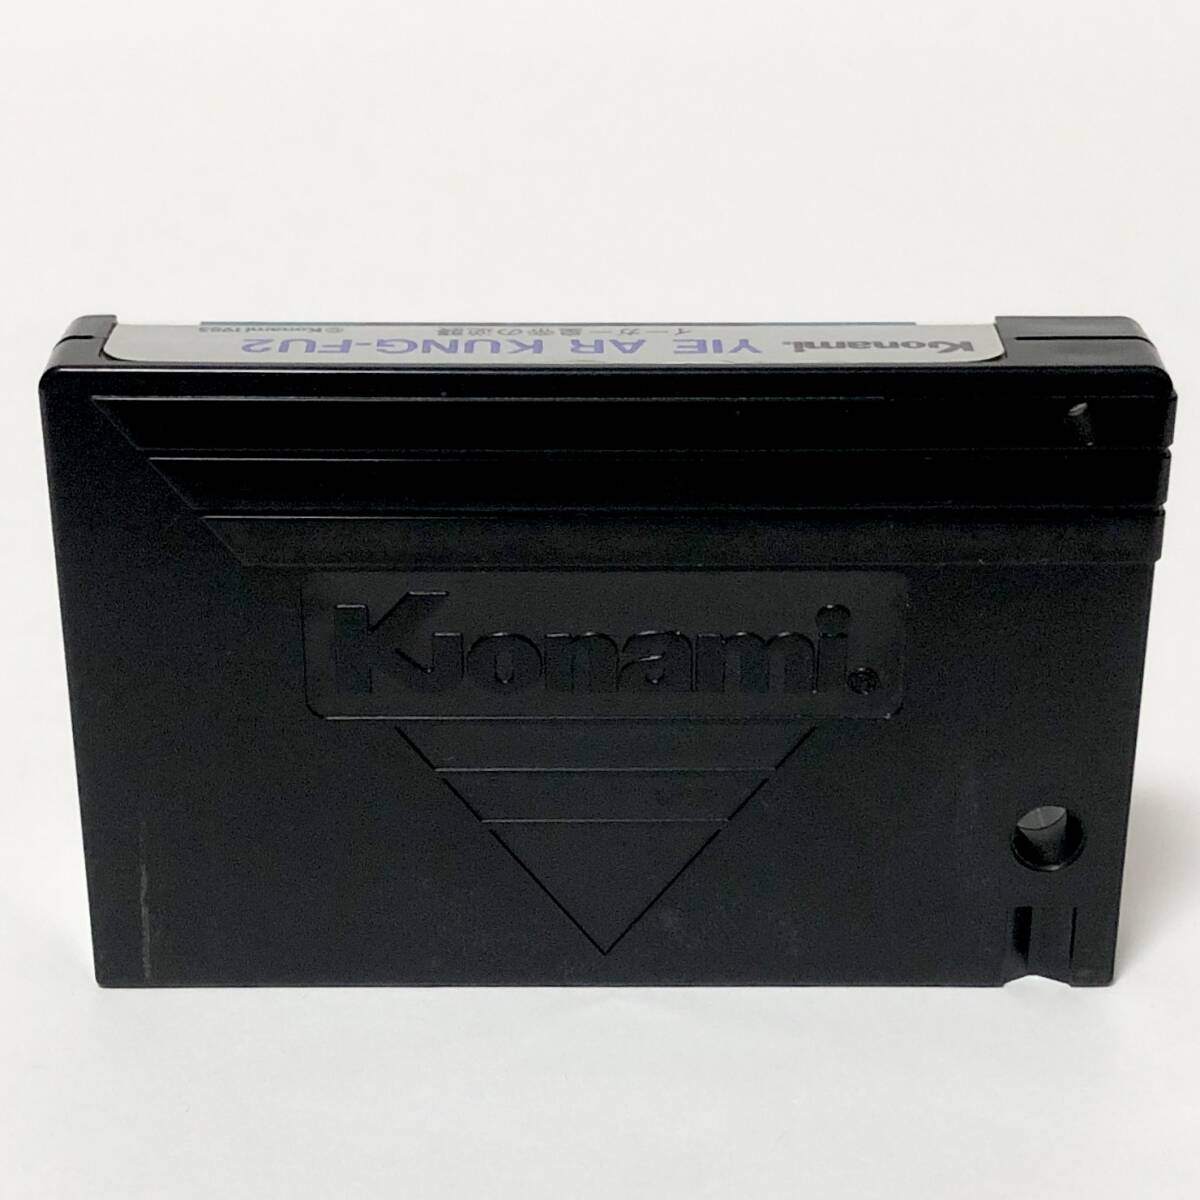 MSXi-ga- император. обратный . коробка мнение имеется боль есть рабочее состояние подтверждено i- Alkane f-2 Konami MSX Yie Ar Kung-Fu Ⅱ CIB Tested Konami RC737